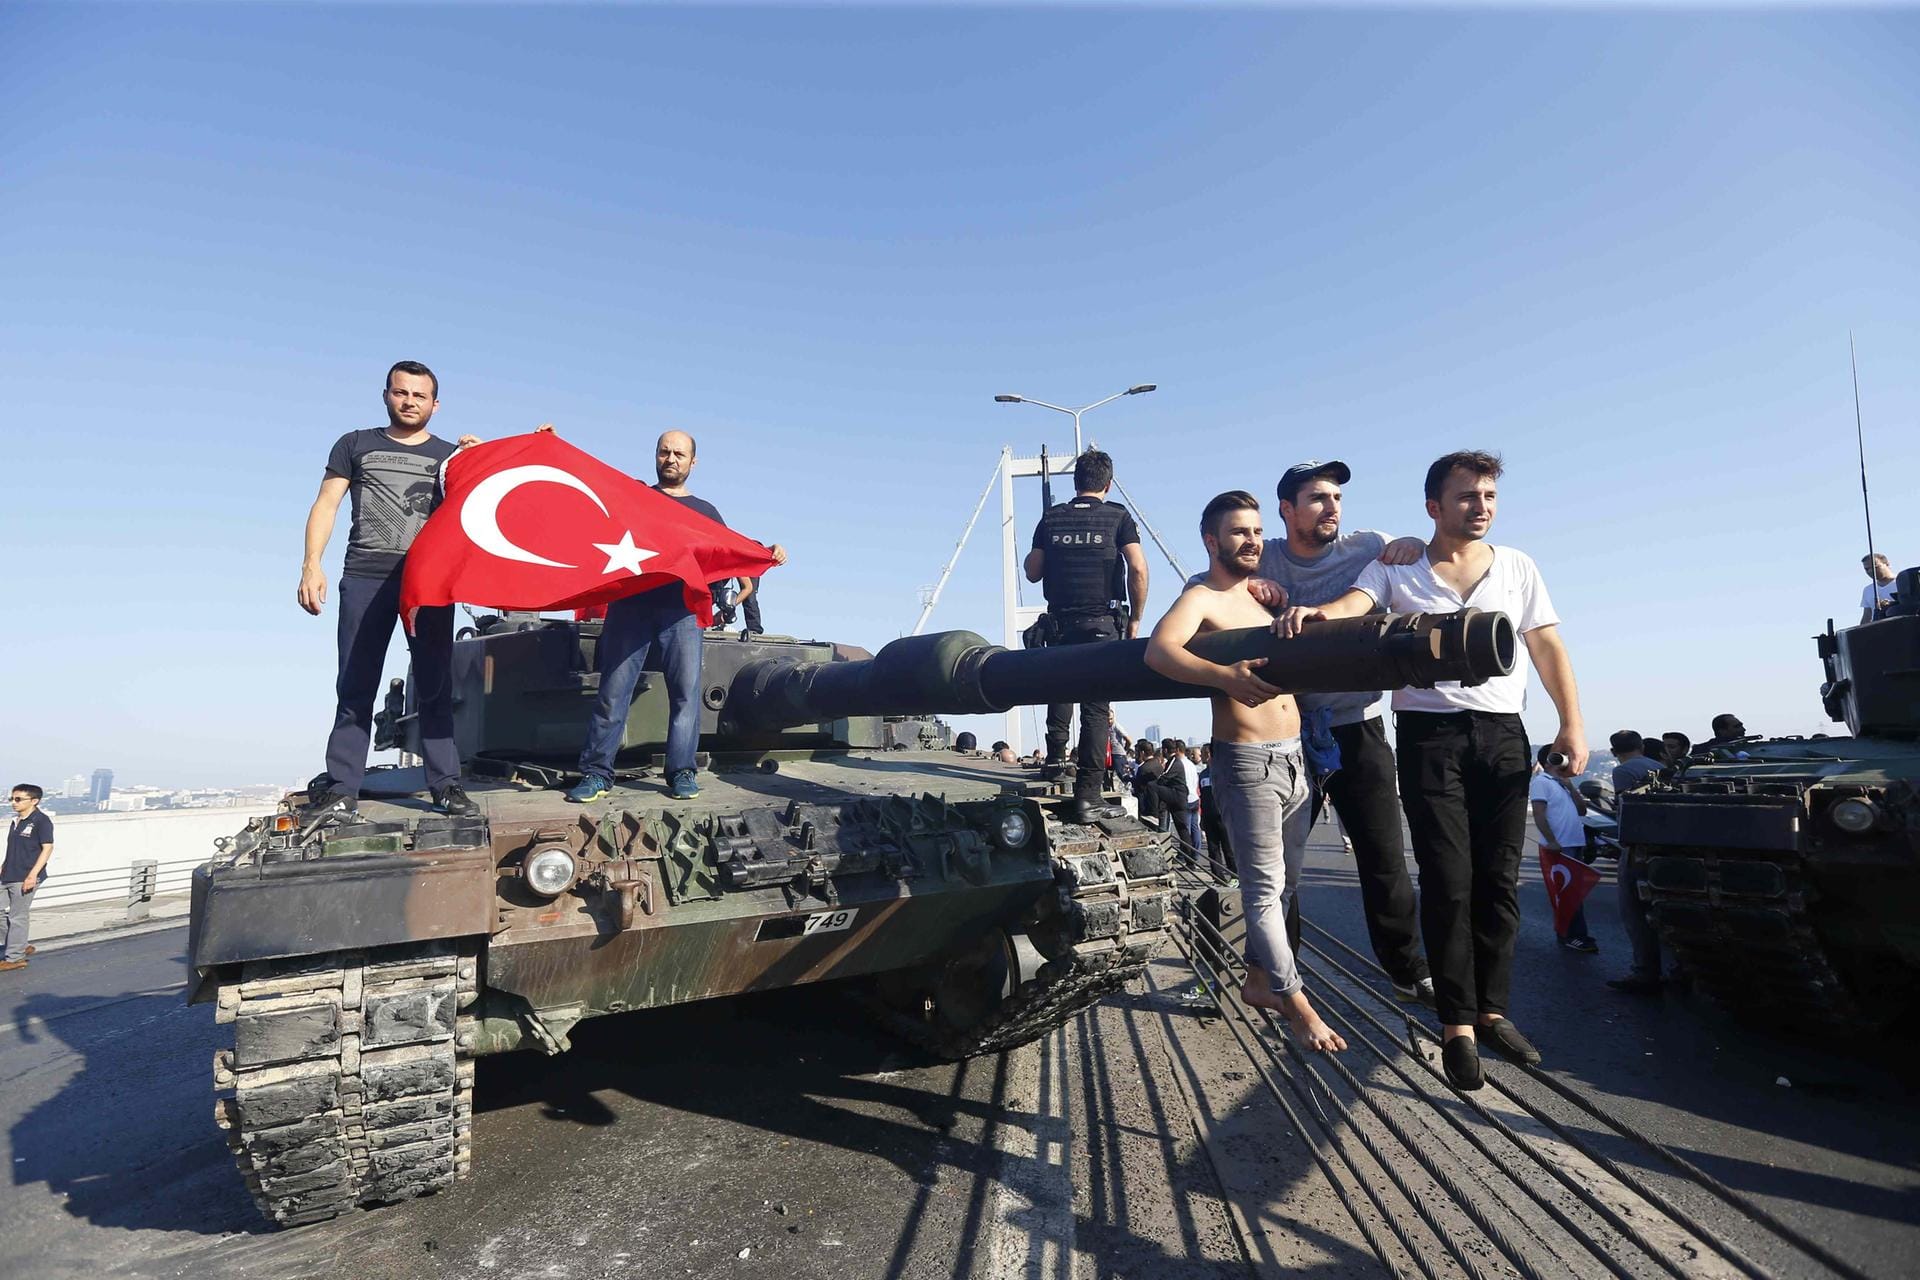 Die Türkei erklärt den Putsch für gescheitert. Die vorläufige Bilanz des blutigen Machtkampfs: Hunderte Tote und Verletzte, 3000 Festnahmen, 2700 entlassene Richter.